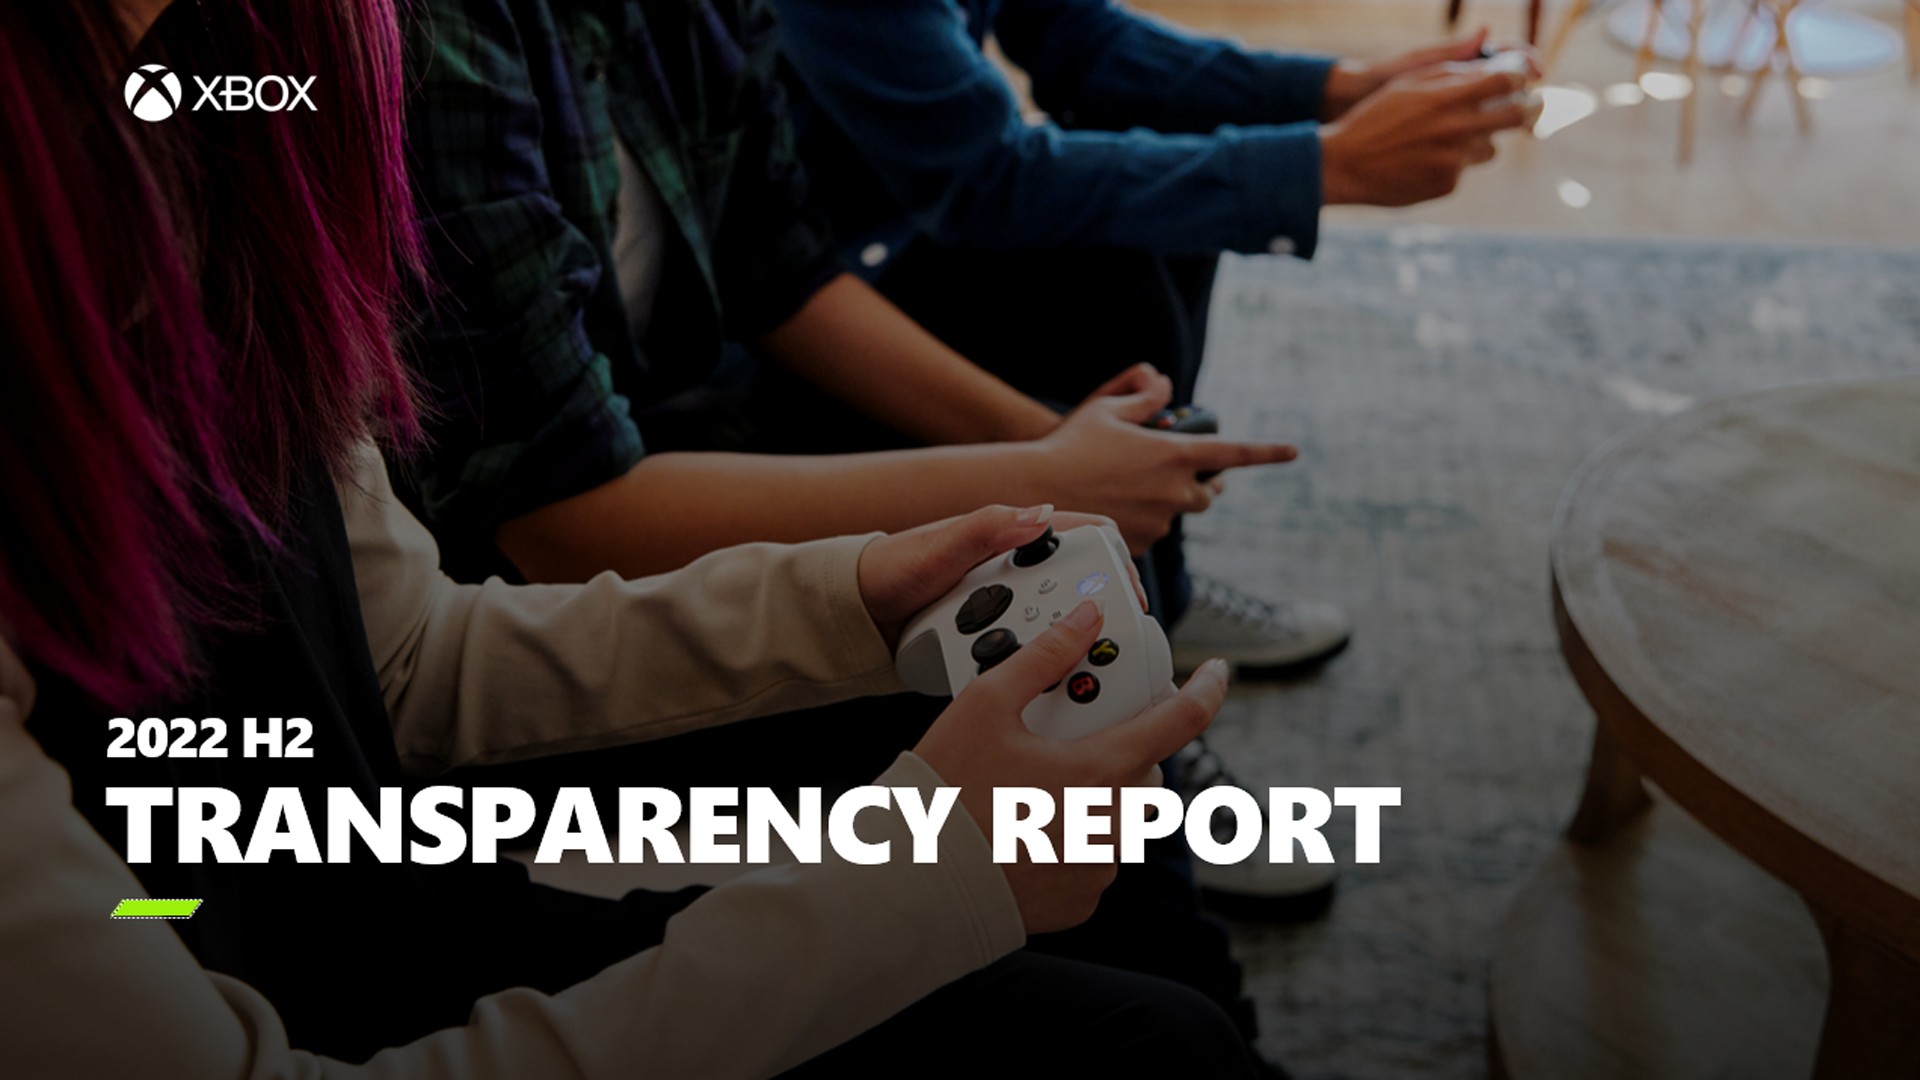 Xbox veröffentlicht zweiten Transparency Report, der die wesentliche Rolle proaktiver Content-Moderation aufzeigt HERO